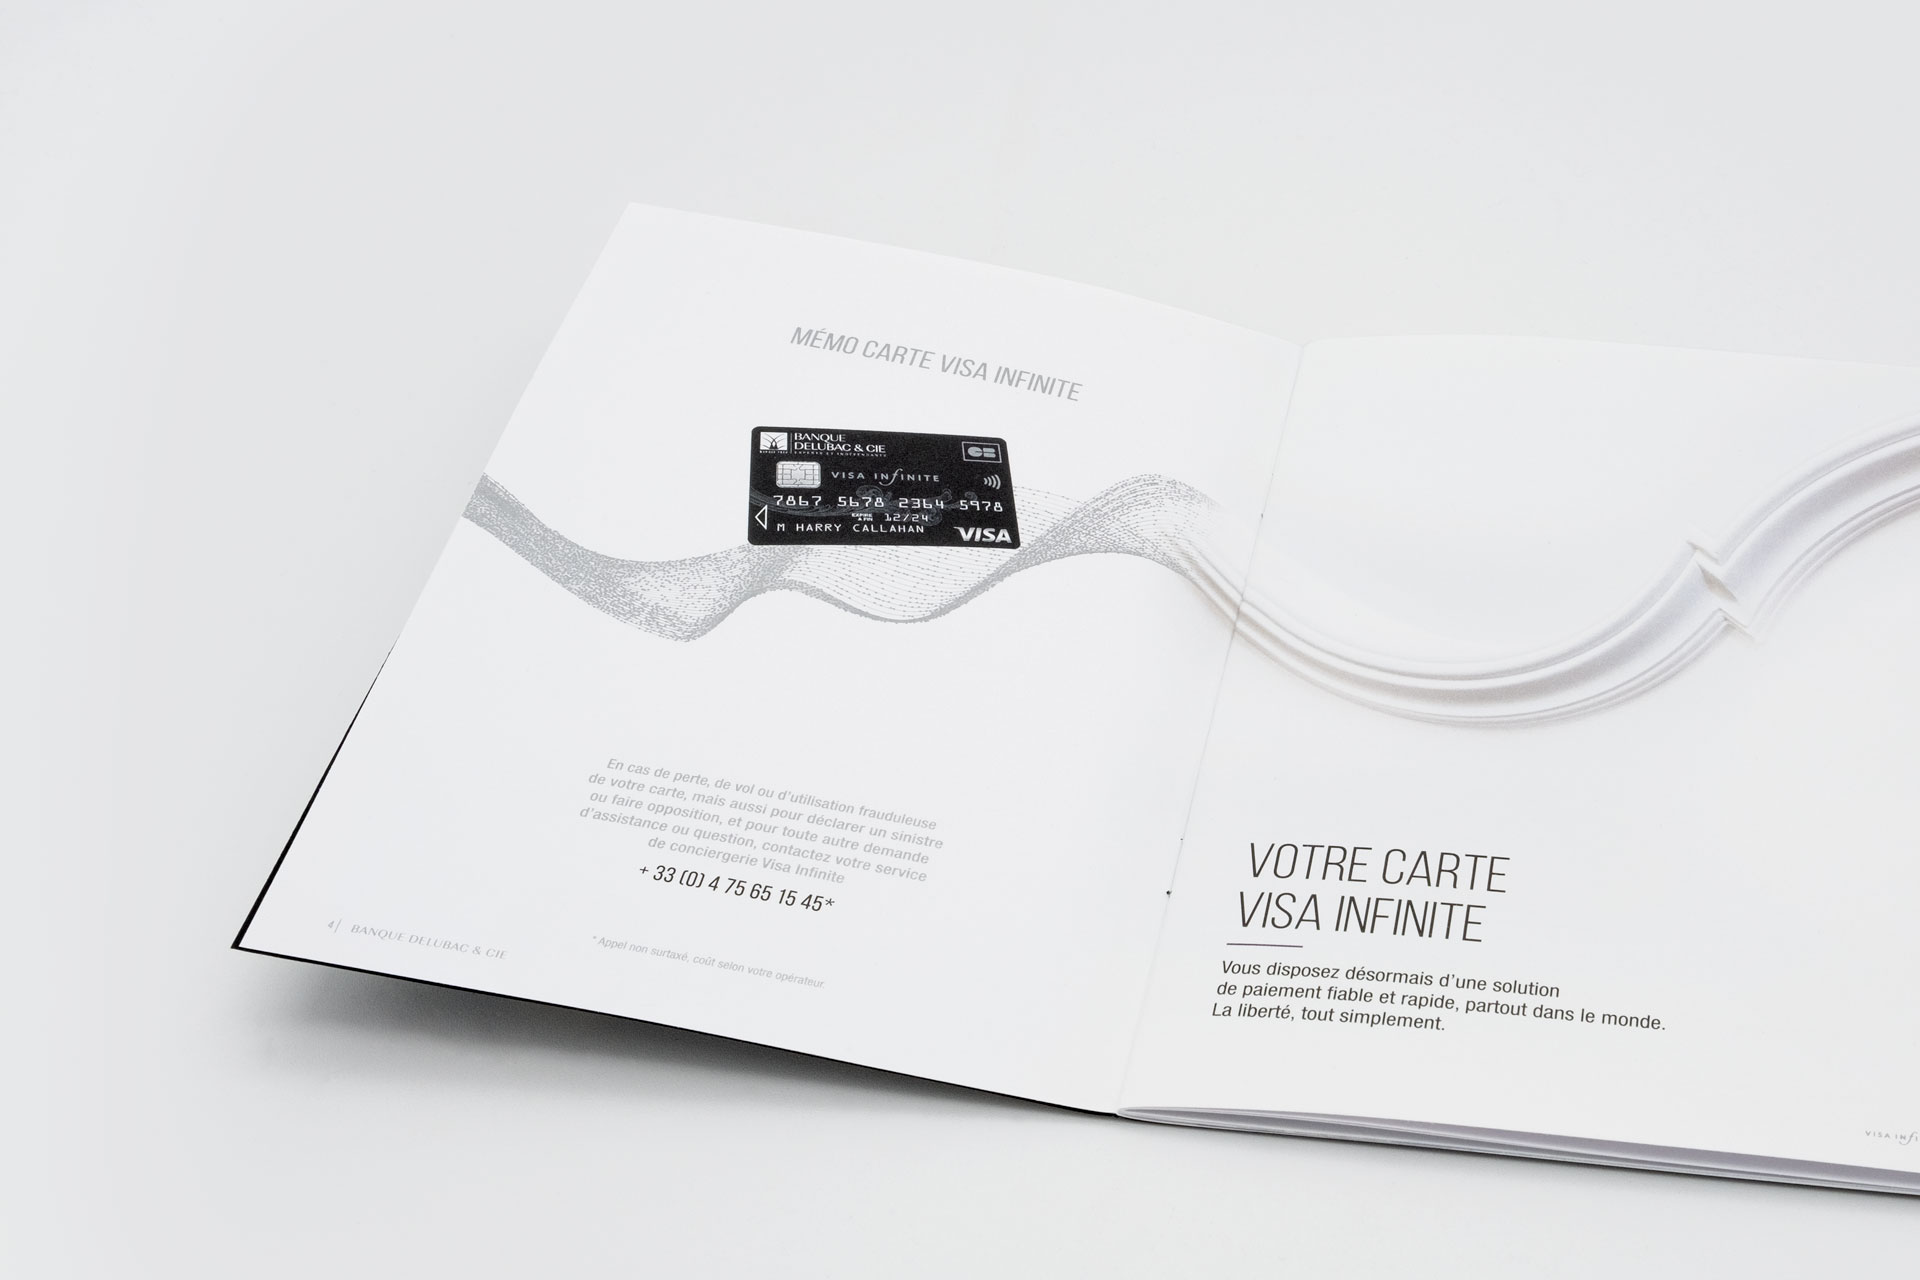 Vue ouverte du livret présentant la carte Visa Infinite ainsi que ses avantages.